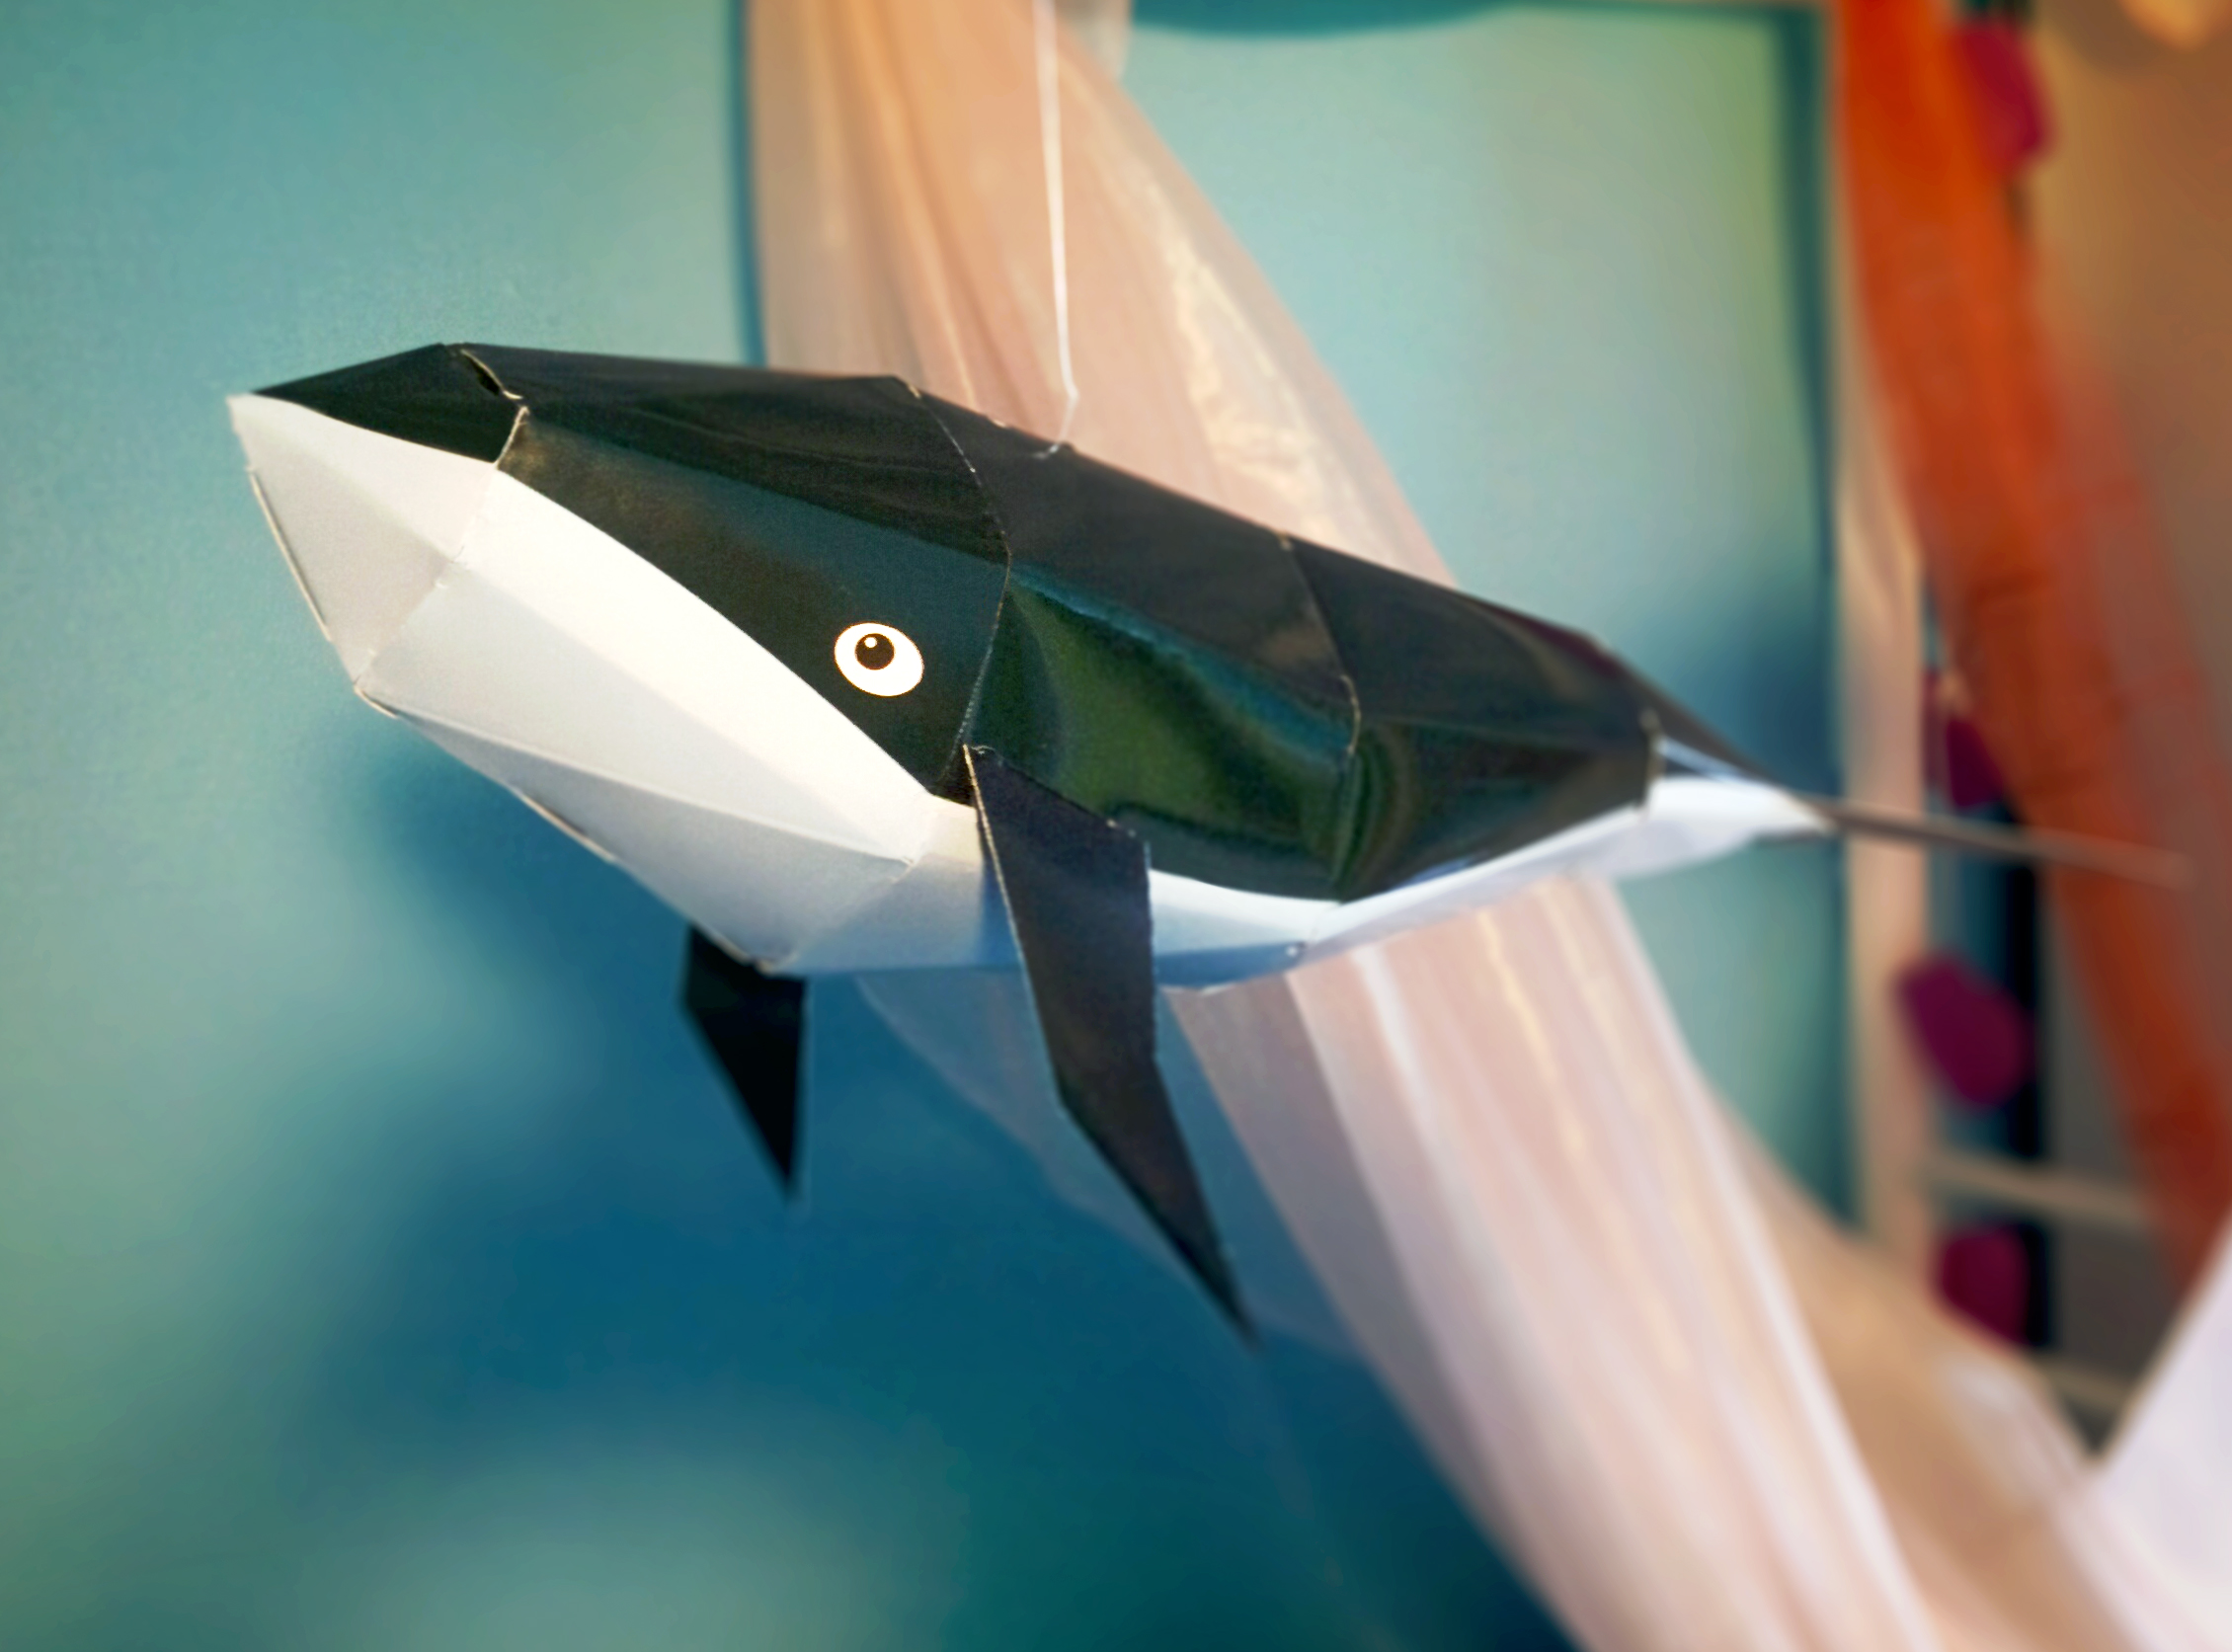 Prototype "Whale"